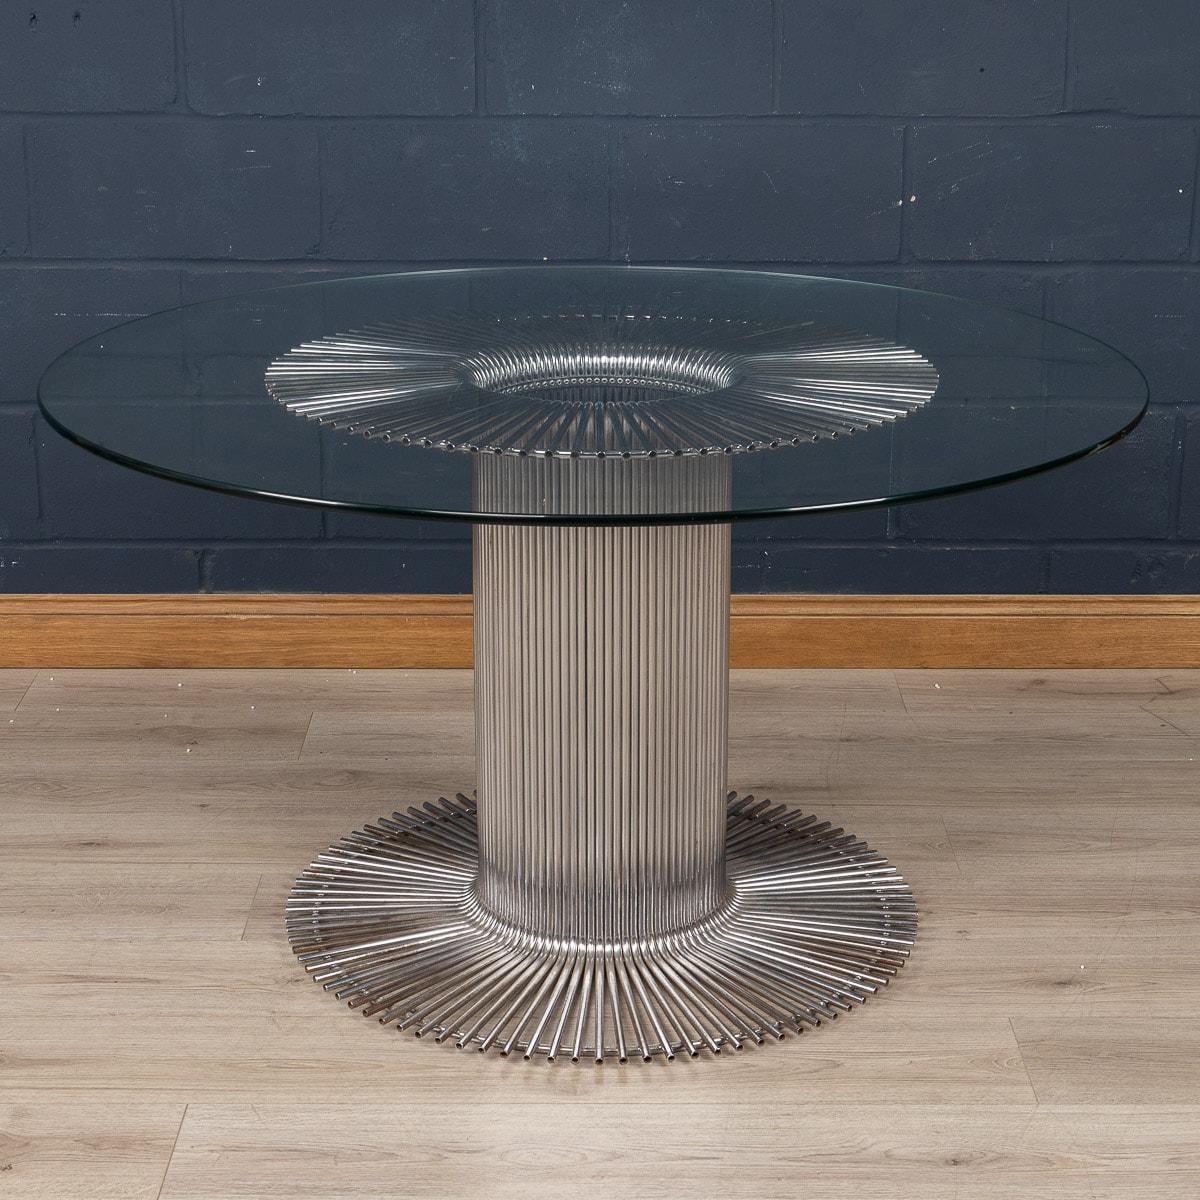 Une élégante table de salle à manger conçue par Gastone Rinaldi pour RIMA, Italie, vers 1970. Connue pour mêler le design industriel à l'art, la structure tubulaire de la table est emblématique du travail de Rinaldi. Des dizaines de tubes chromés